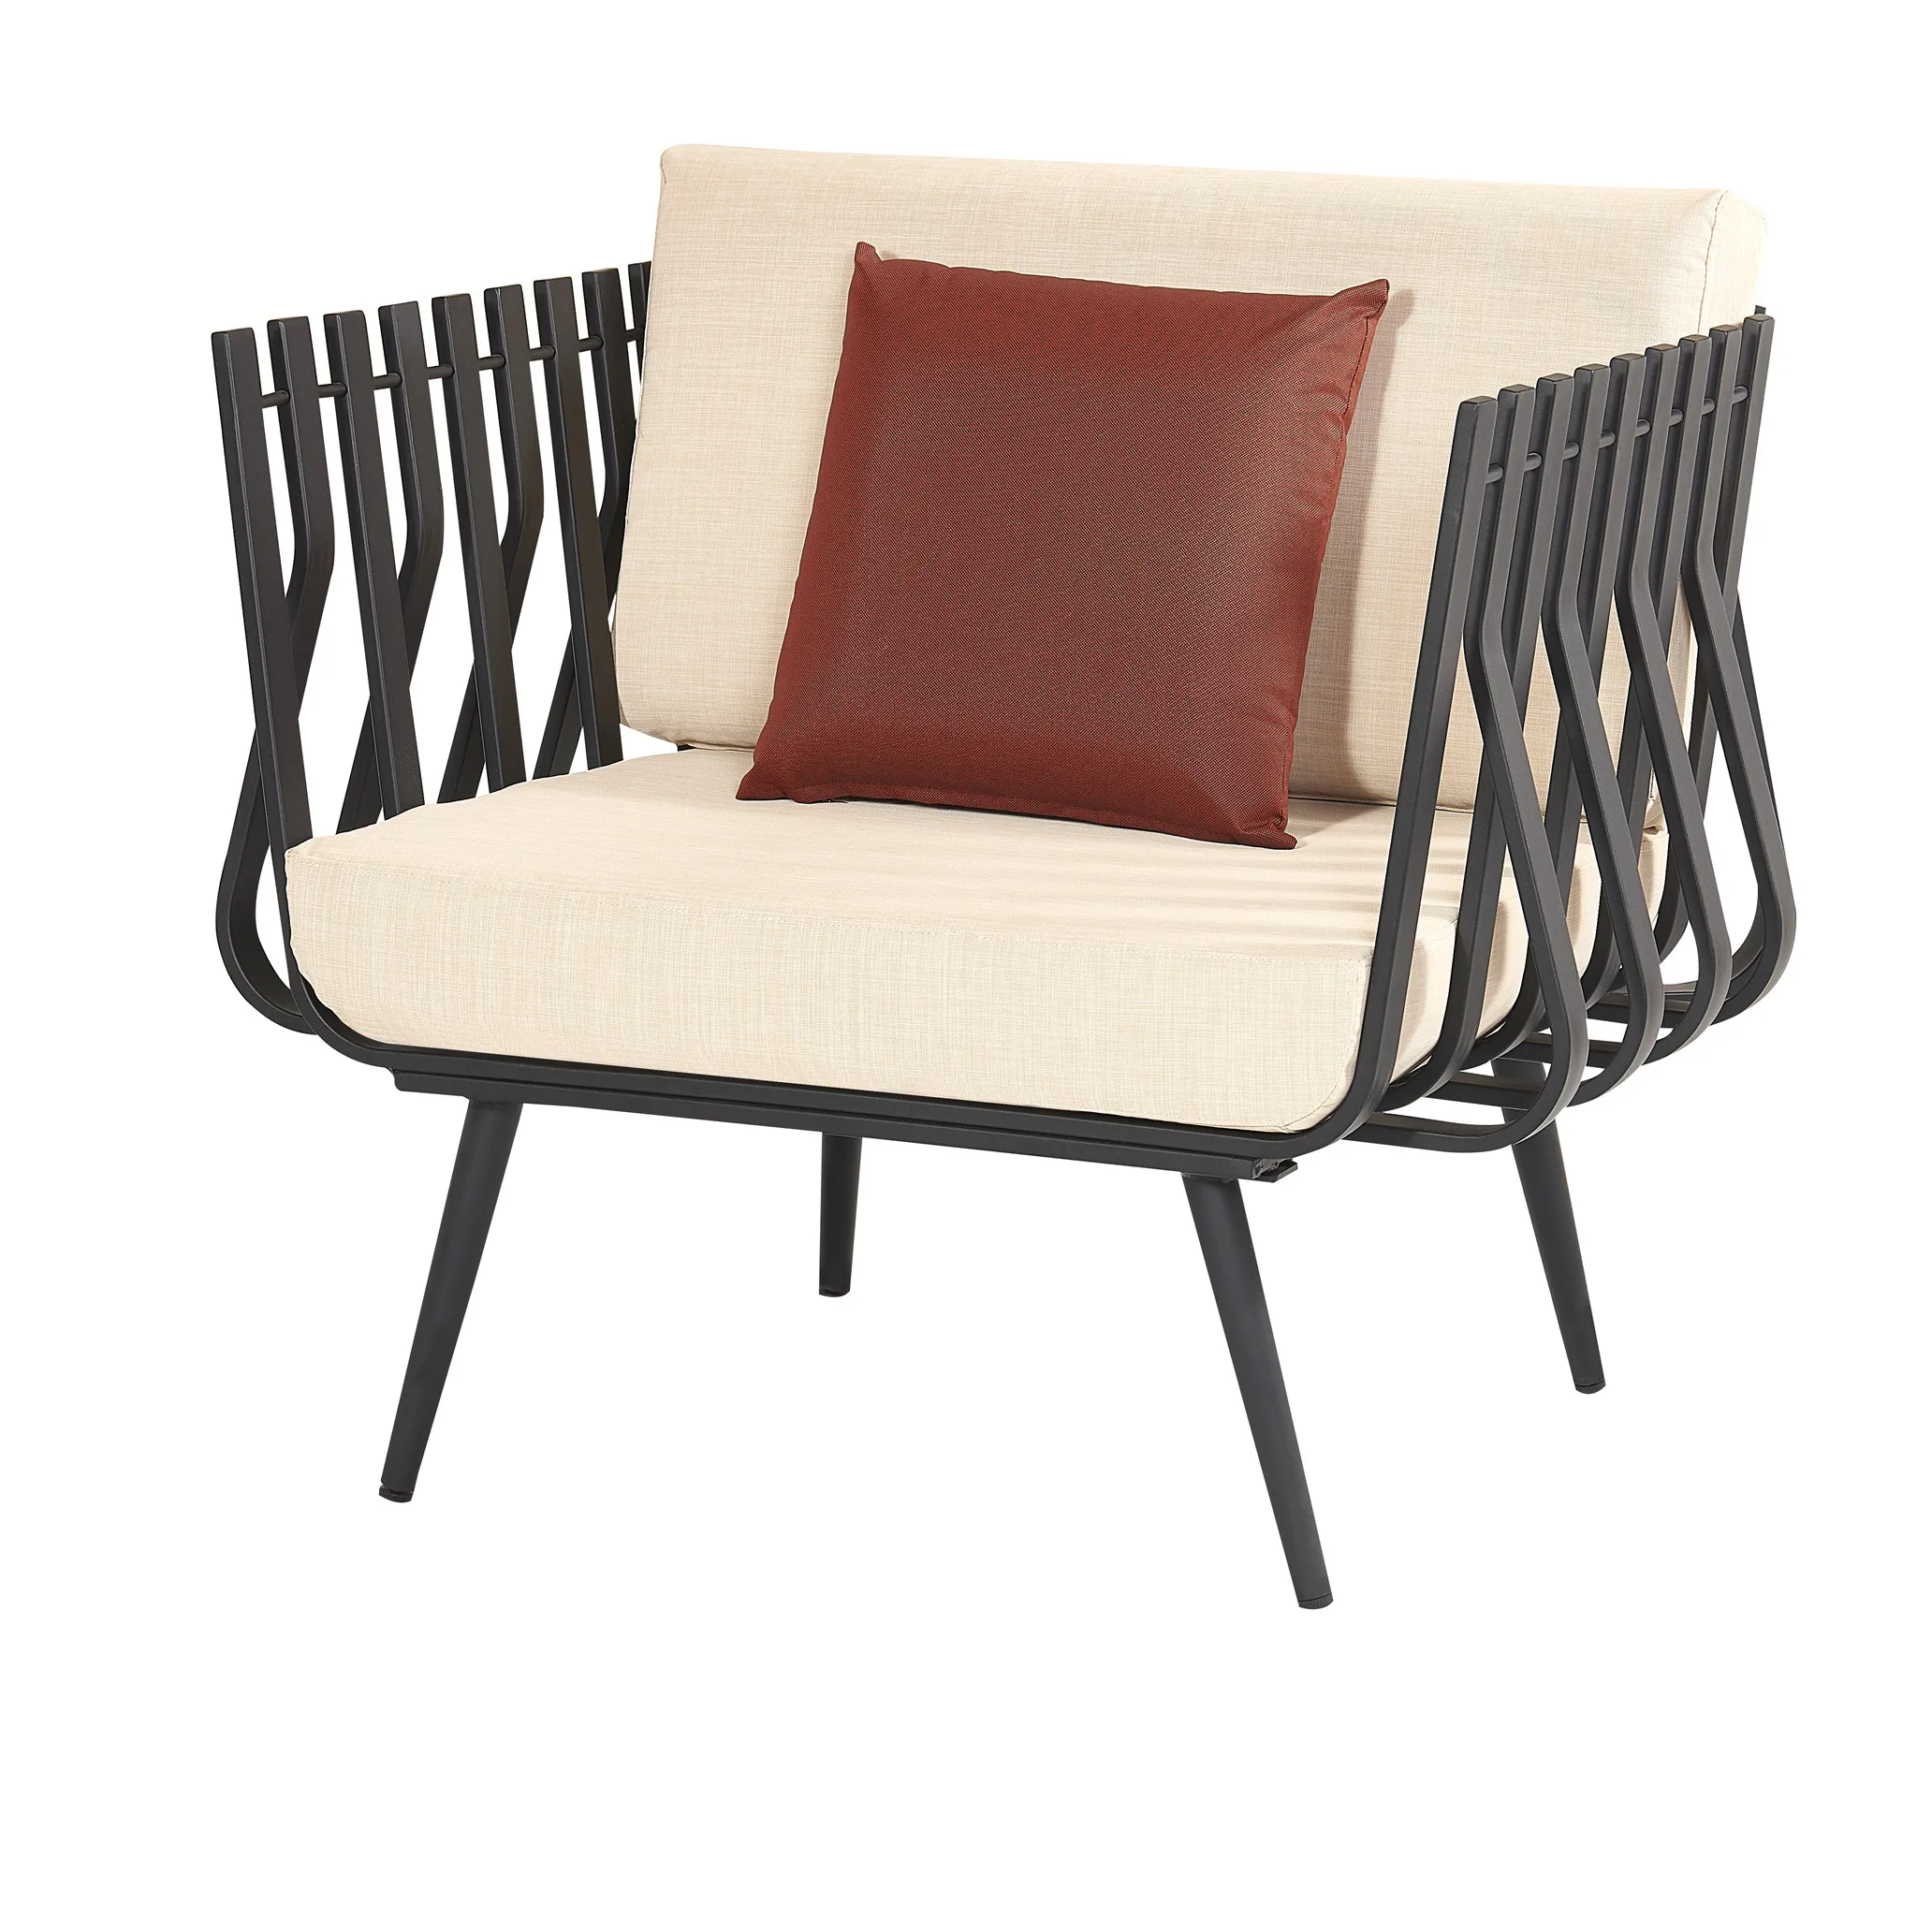 Piscina impermeable diseño moderno estilo de lujo de aluminio al aire libre sofá muebles de jardín